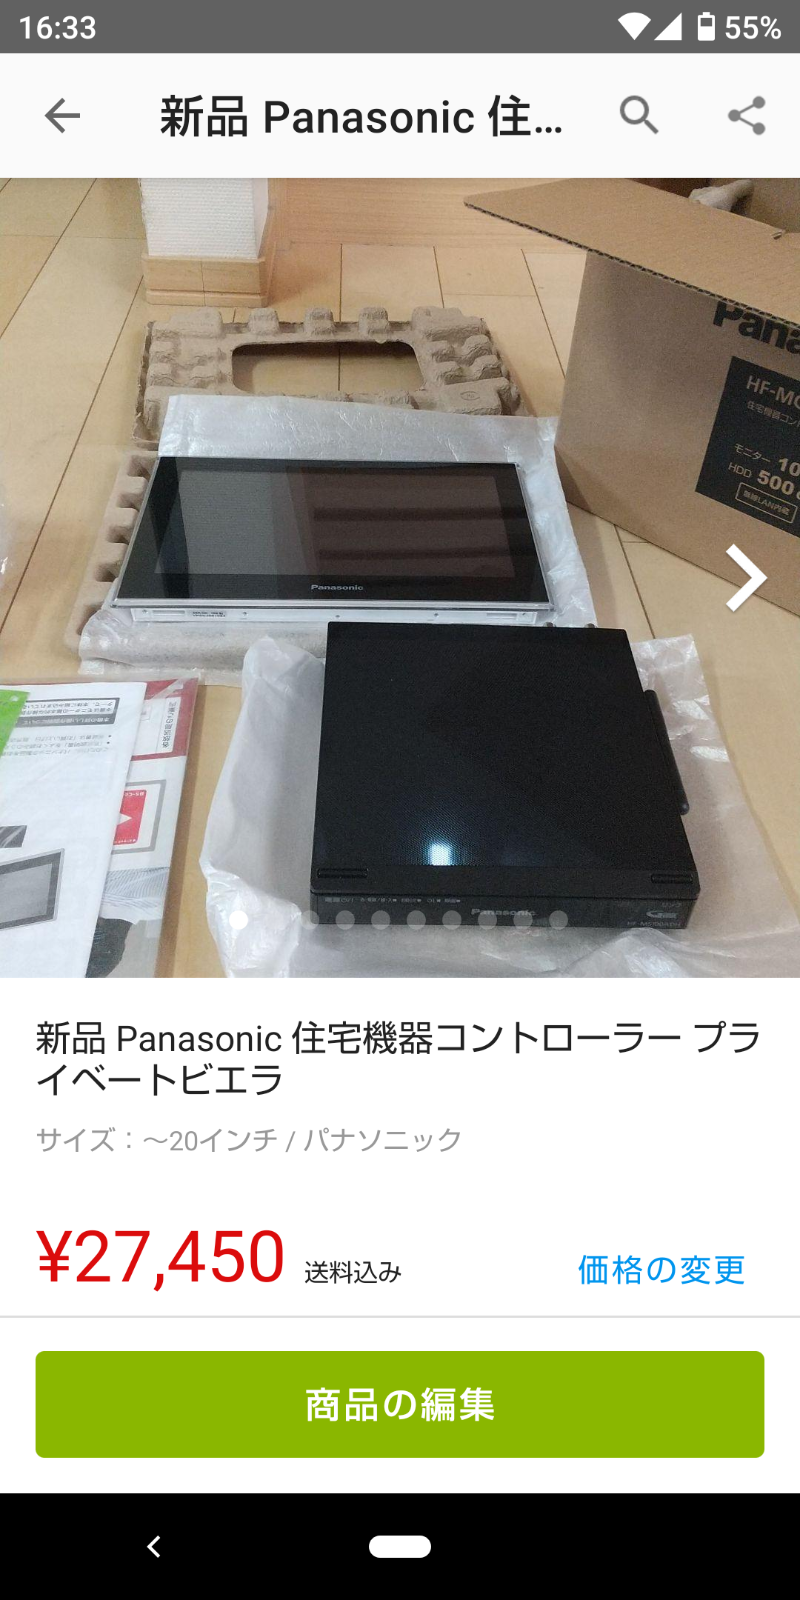 ☆値下げ☆ Panasonic HF-MC10A1 住宅機器コントローラー-